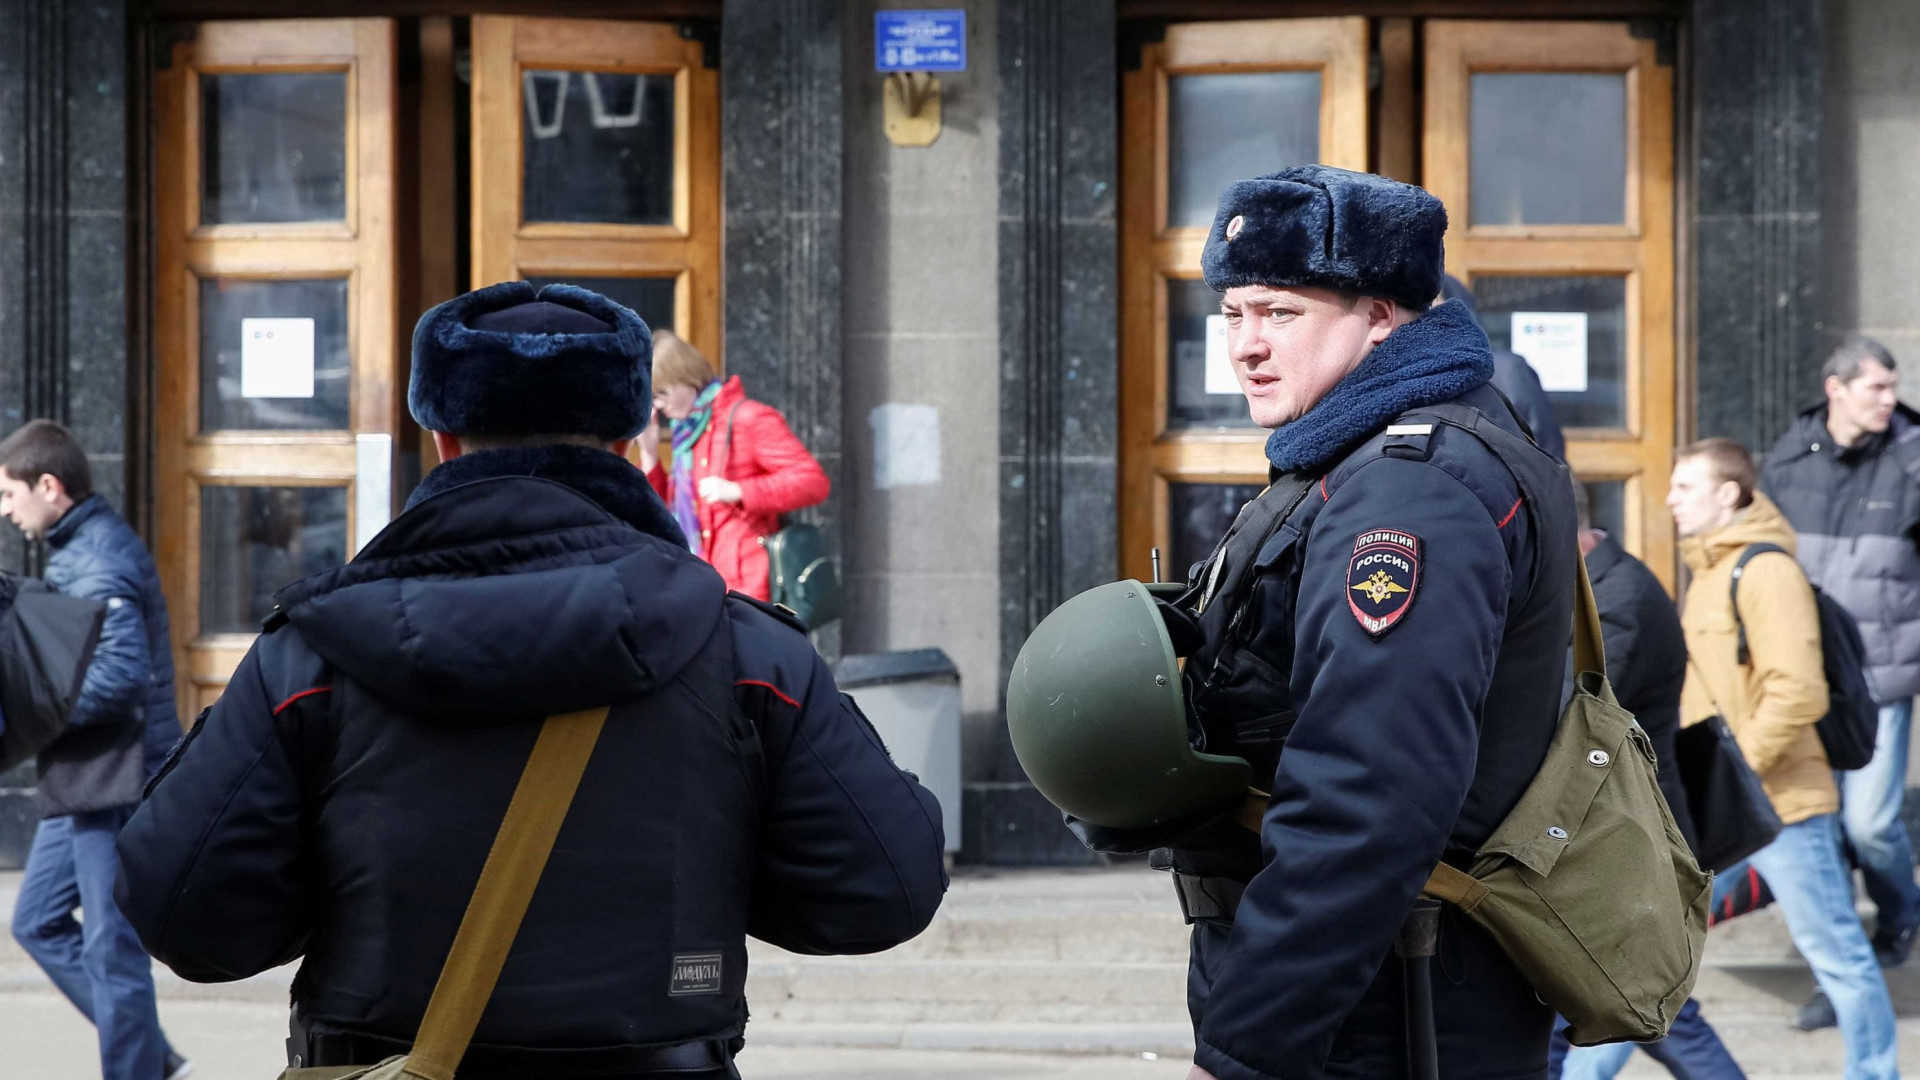 Copa do Mundo: ameaça de bomba levou a evacuação de hotel na Rússia